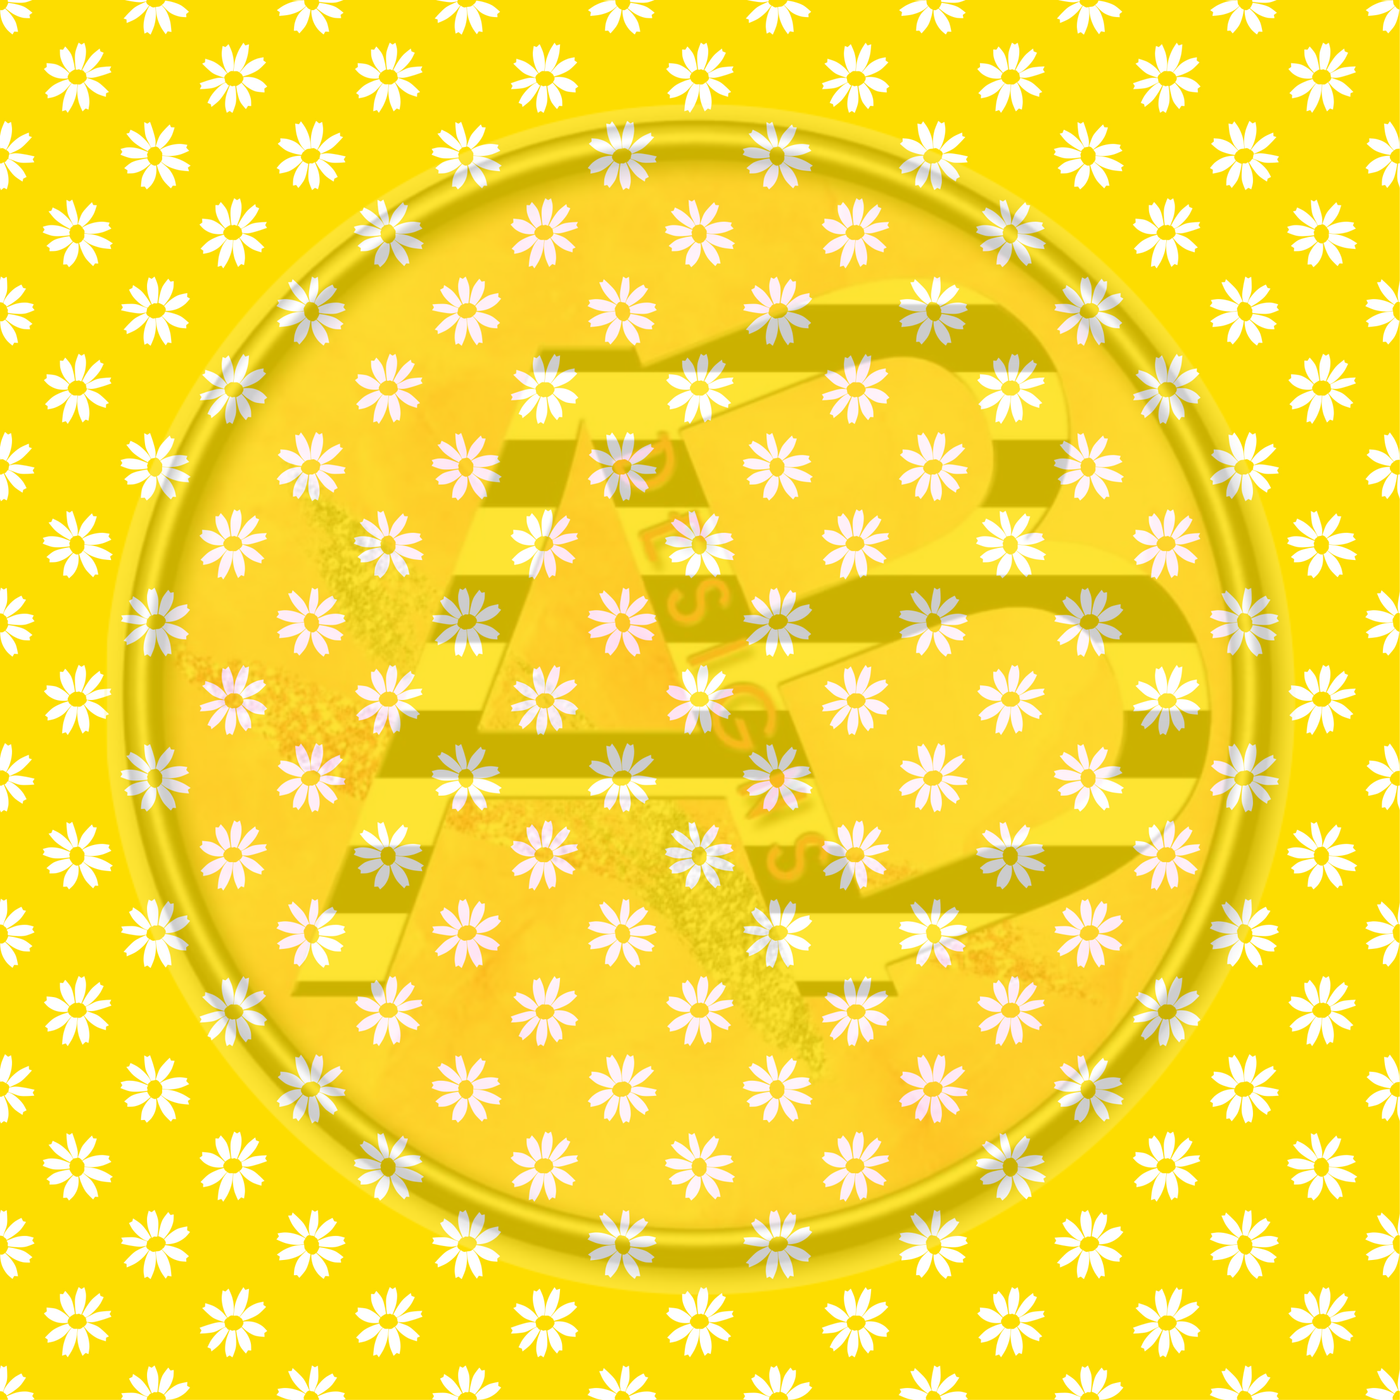 Adhesive Patterned Vinyl - Honey Bee 09